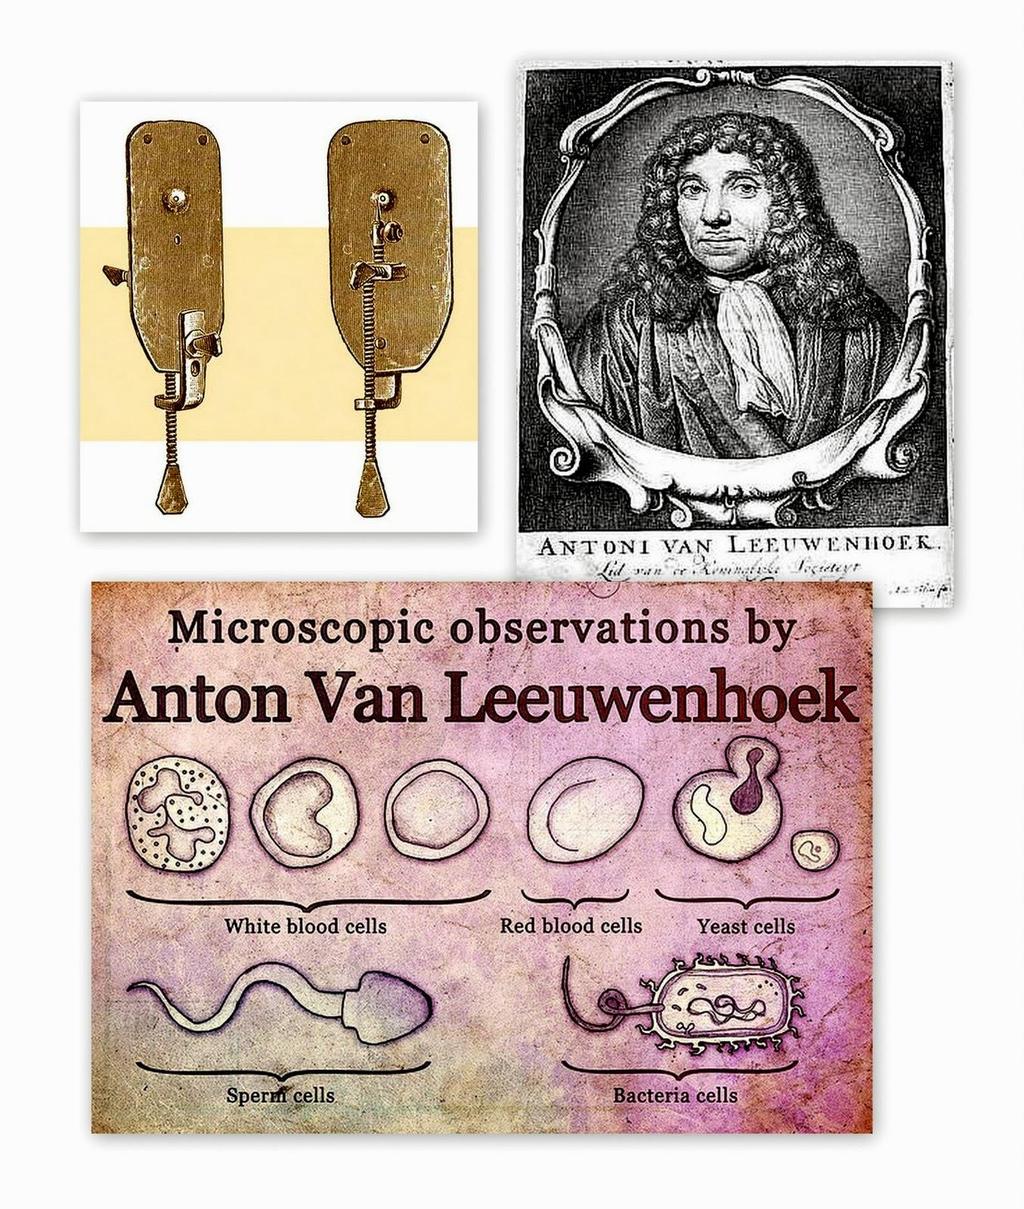 B. Anton van Leeuwenhoek (1673)